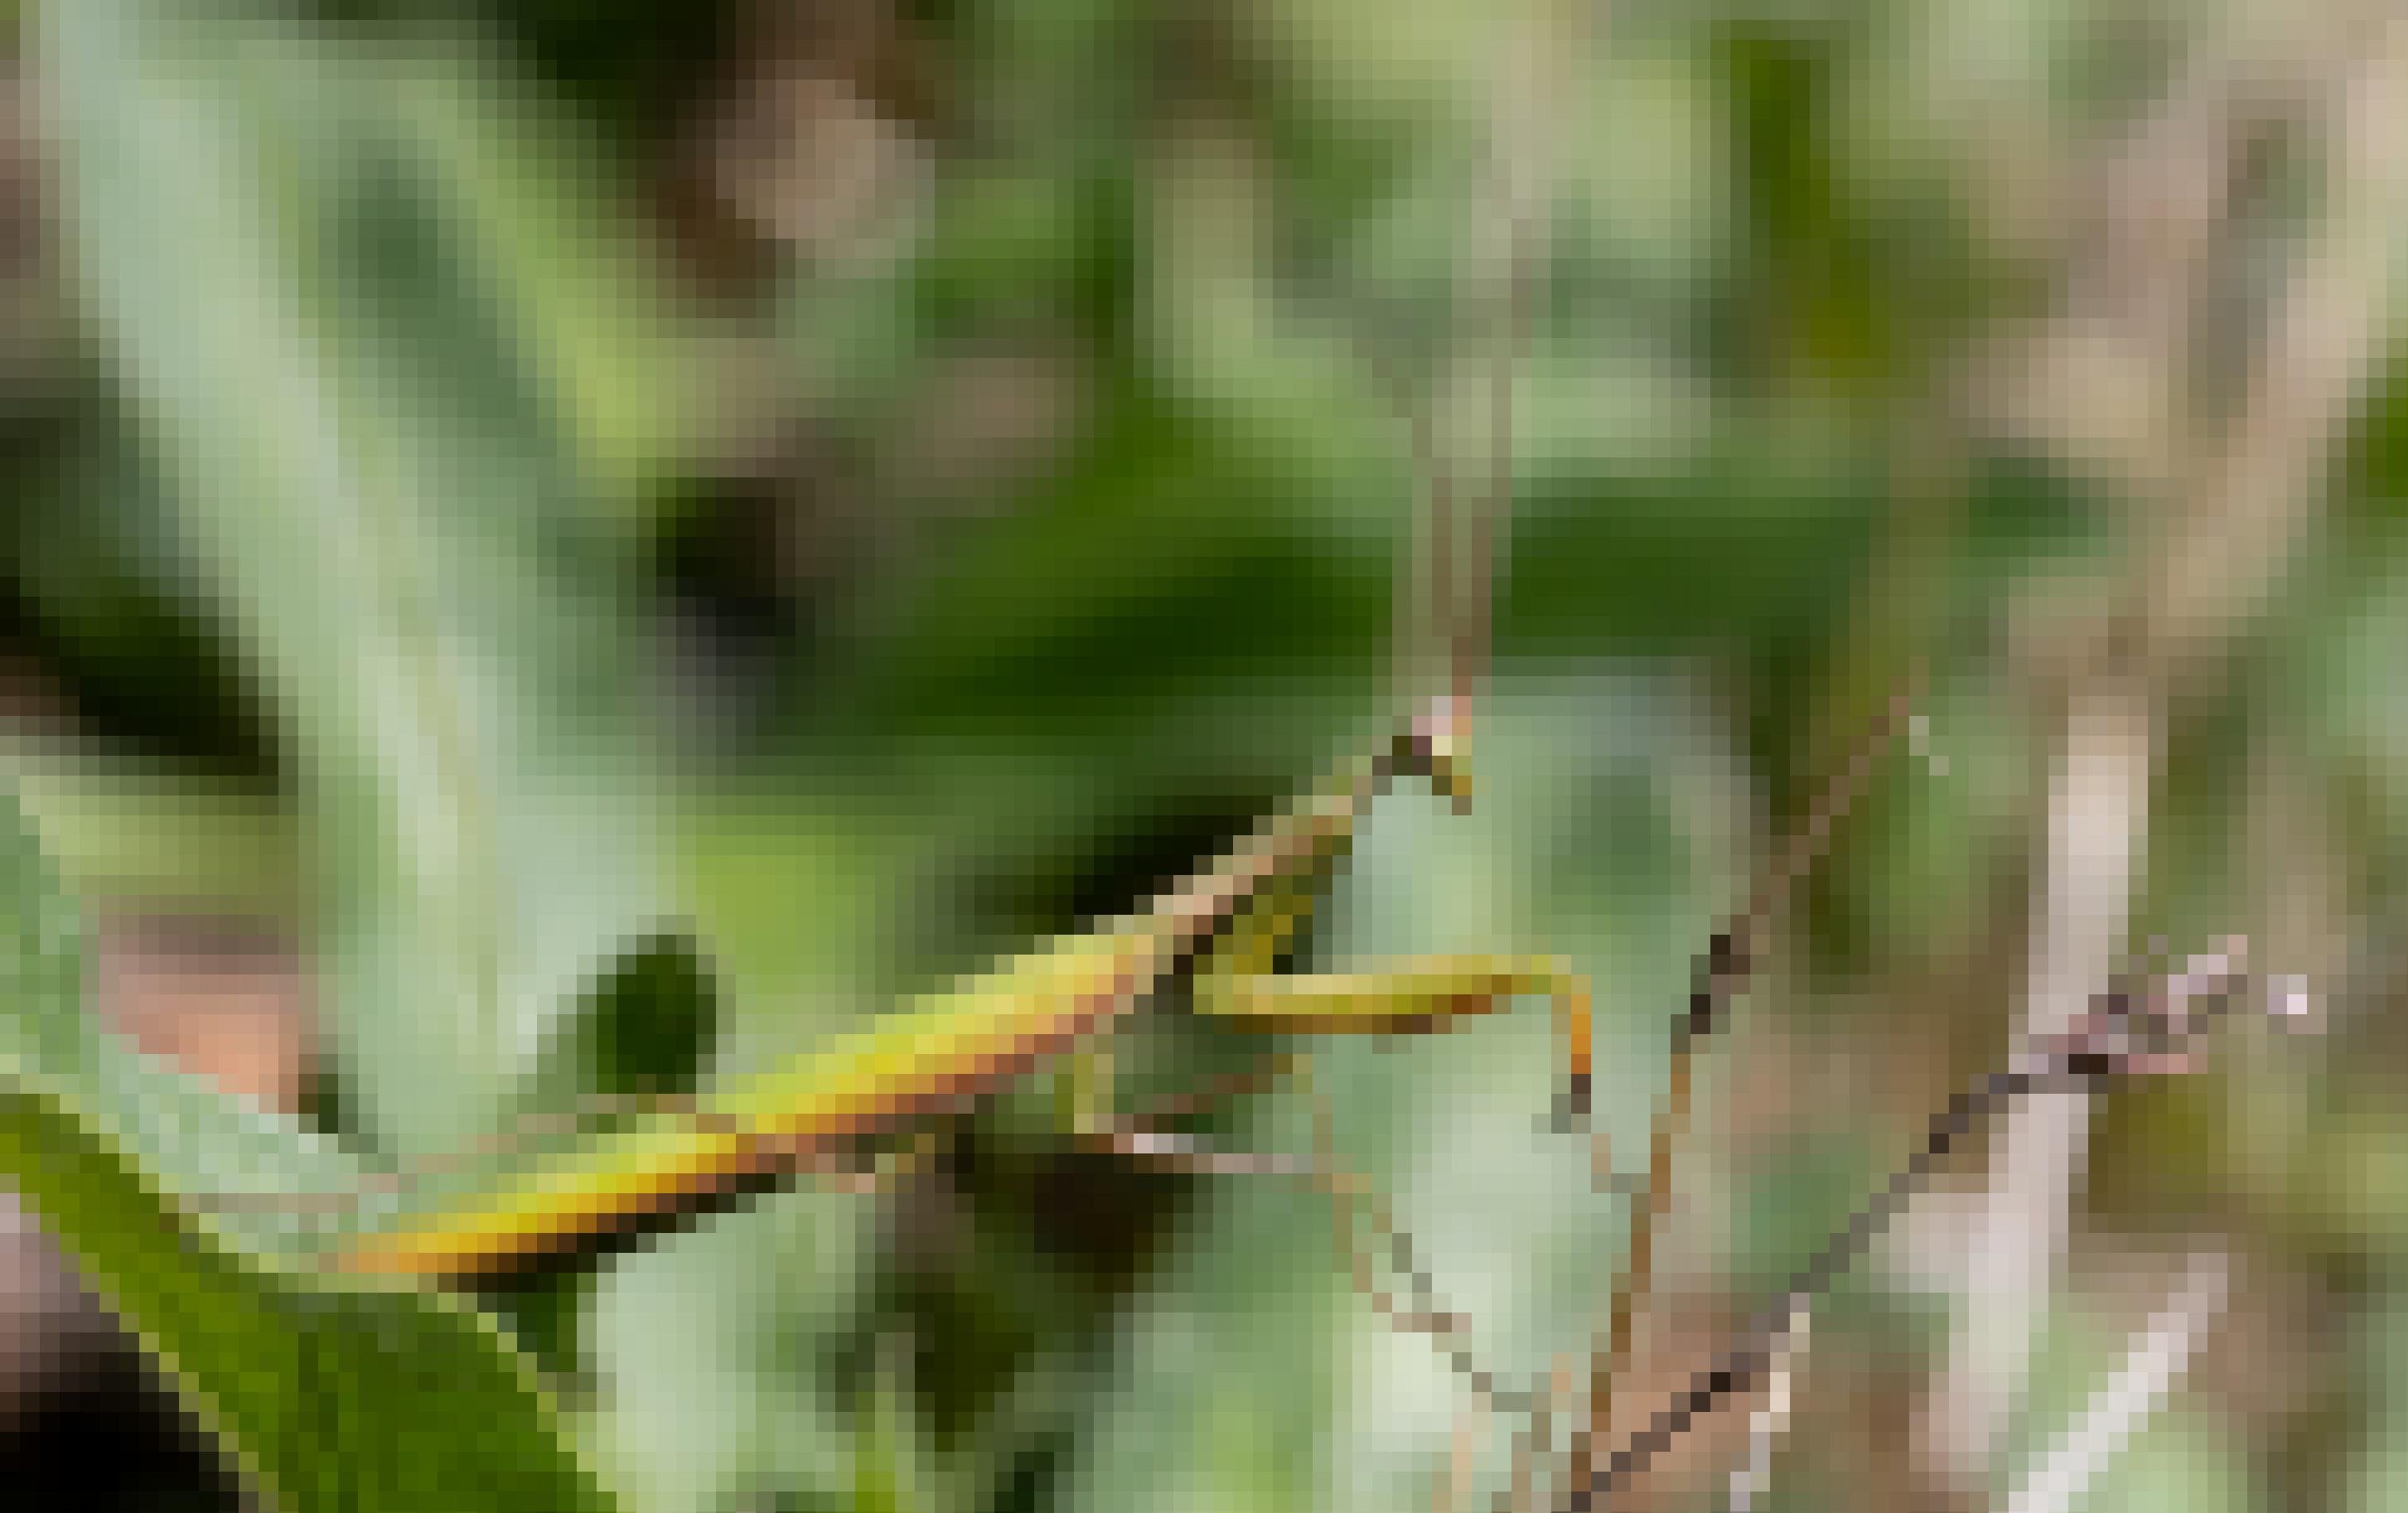 Ein grünes Insekt mit braunroten Details sitzt auf einem Blatt.